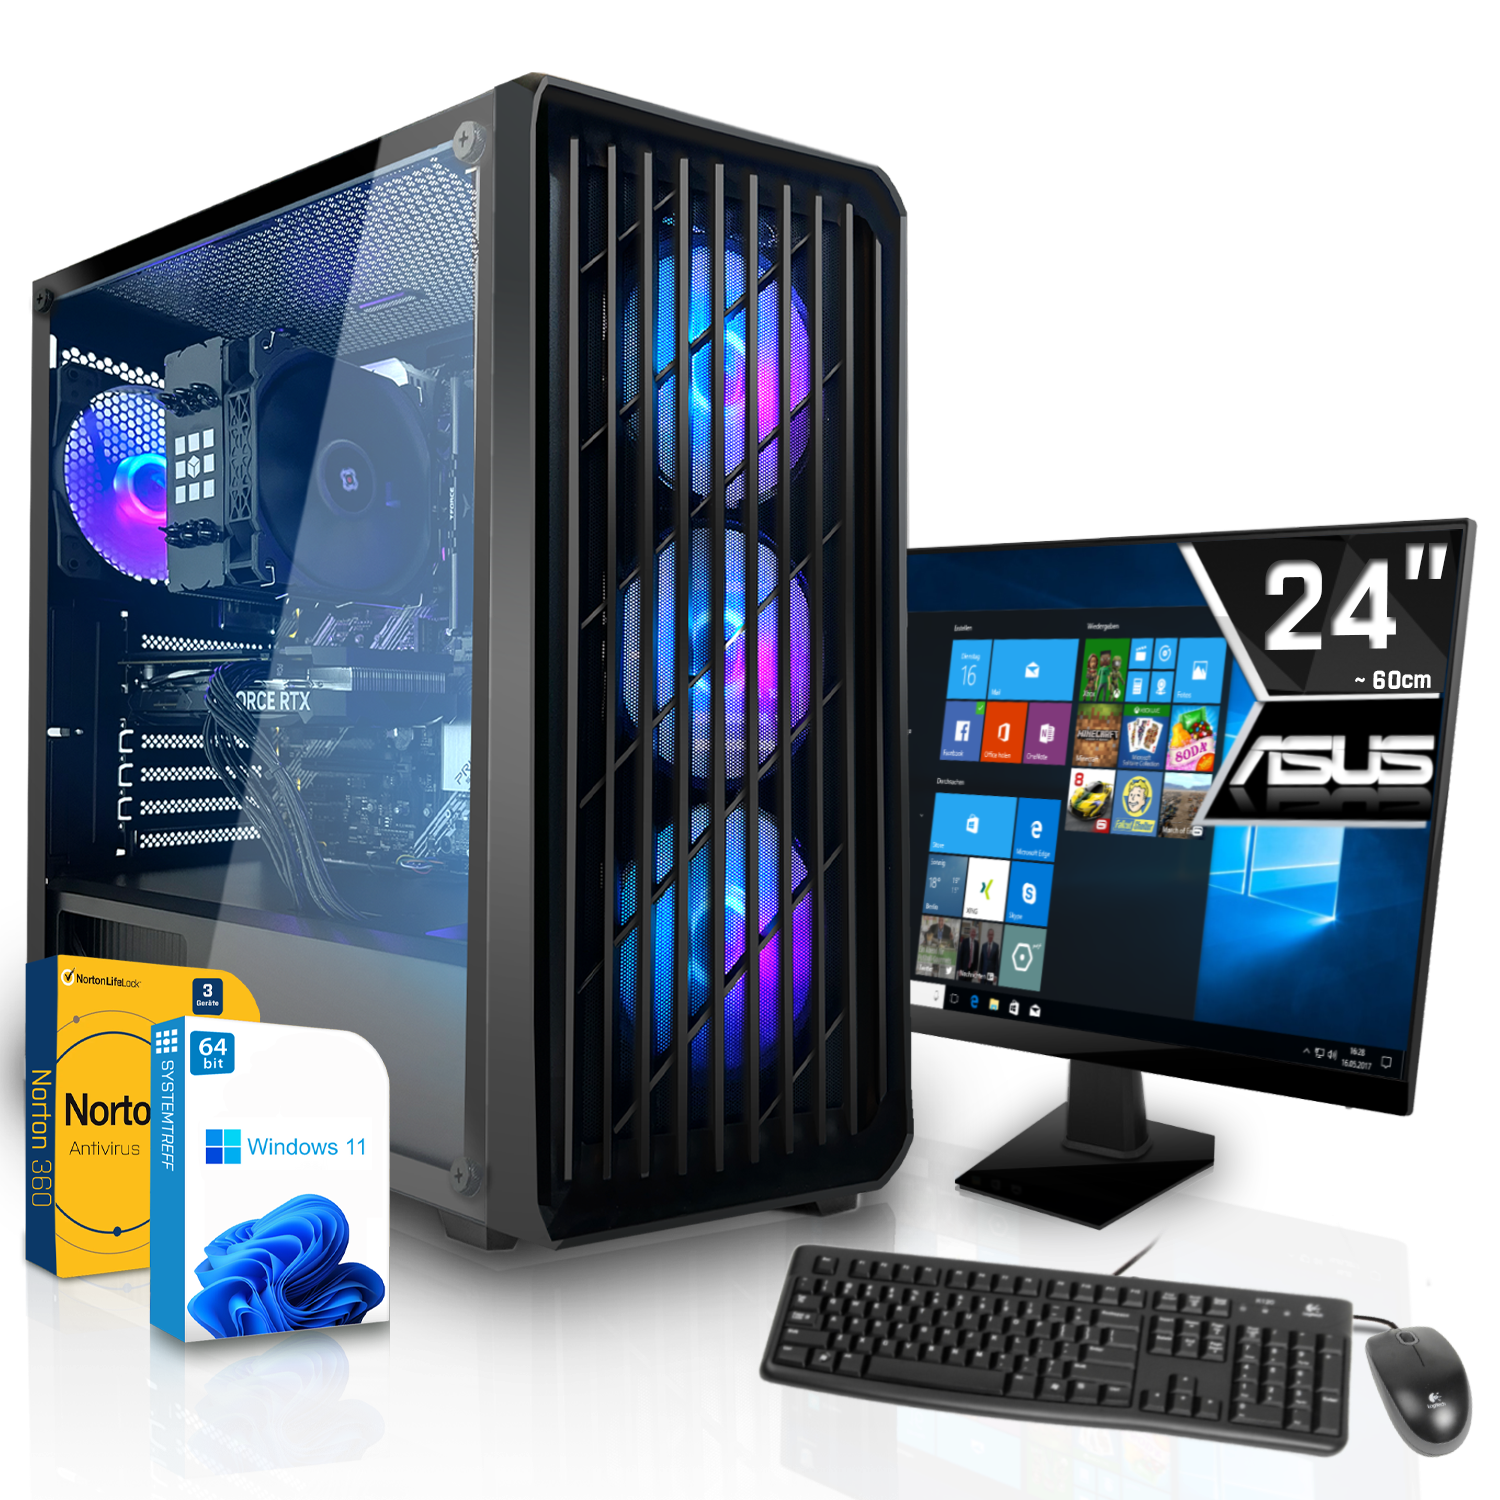 GB Komplett Gaming 8 3060 16 Intel Prozessor, RTX i5-12600K 1000 mit i5-12600K, GDDR6, Komplett Core Nvidia RAM, GB mSSD, SYSTEMTREFF GeForce GB 8GB PC